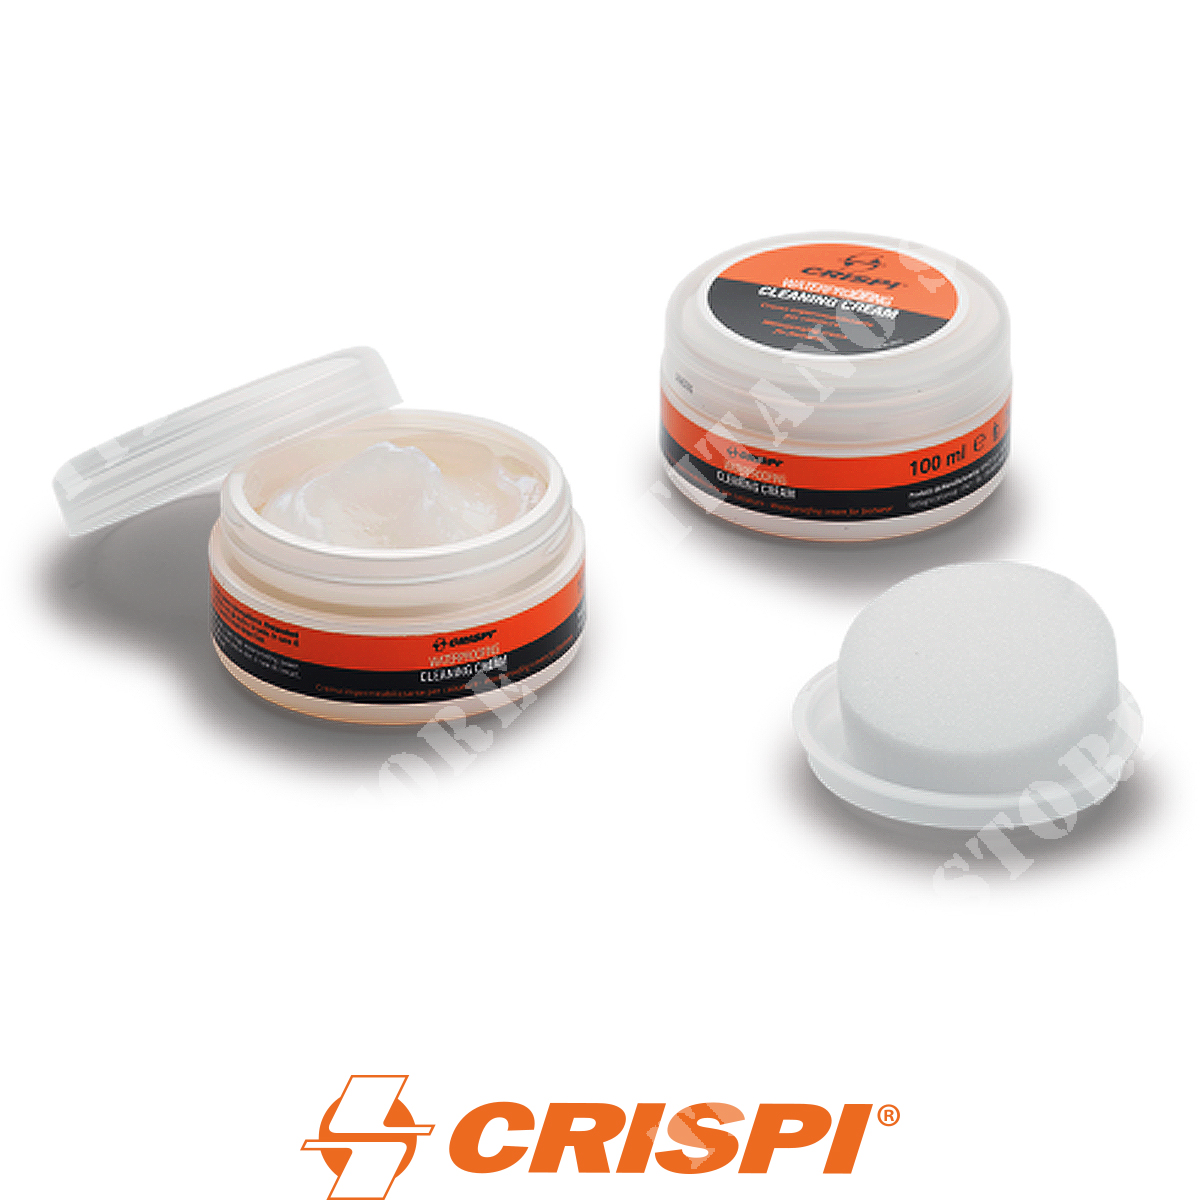 Cleaning cream calzature crispi (am4302): Anfibi - accessori per